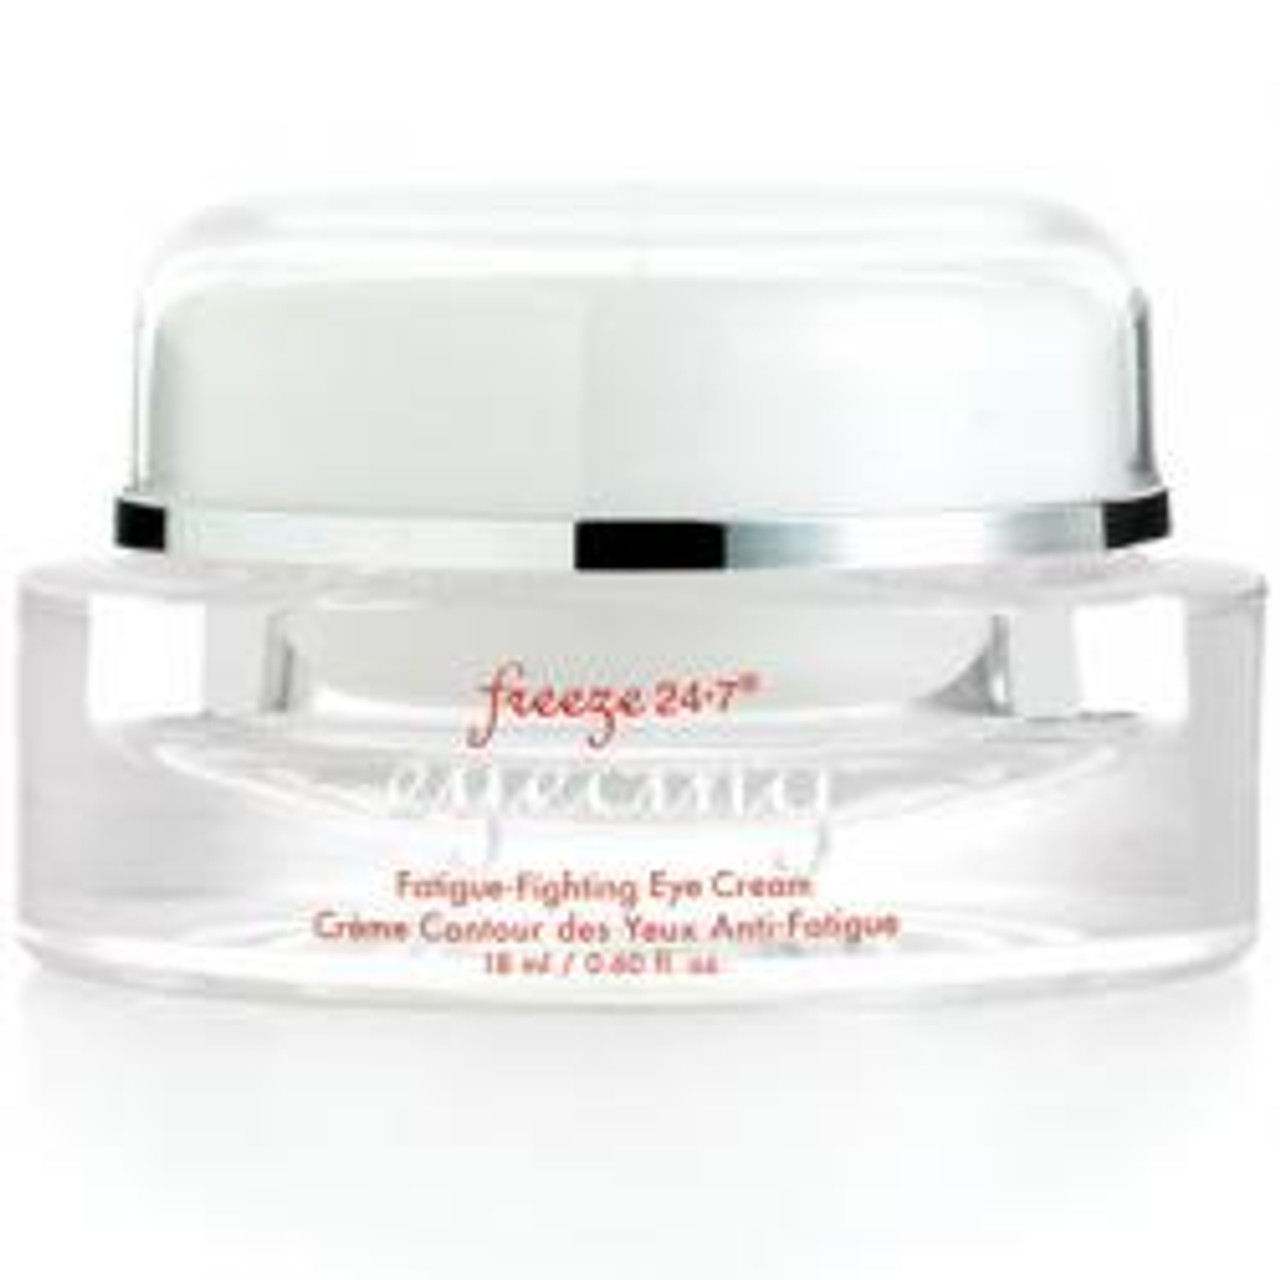 Freeze 24/7 Eyecing Fatigue-Fighting Eye Cream, .60 oz.